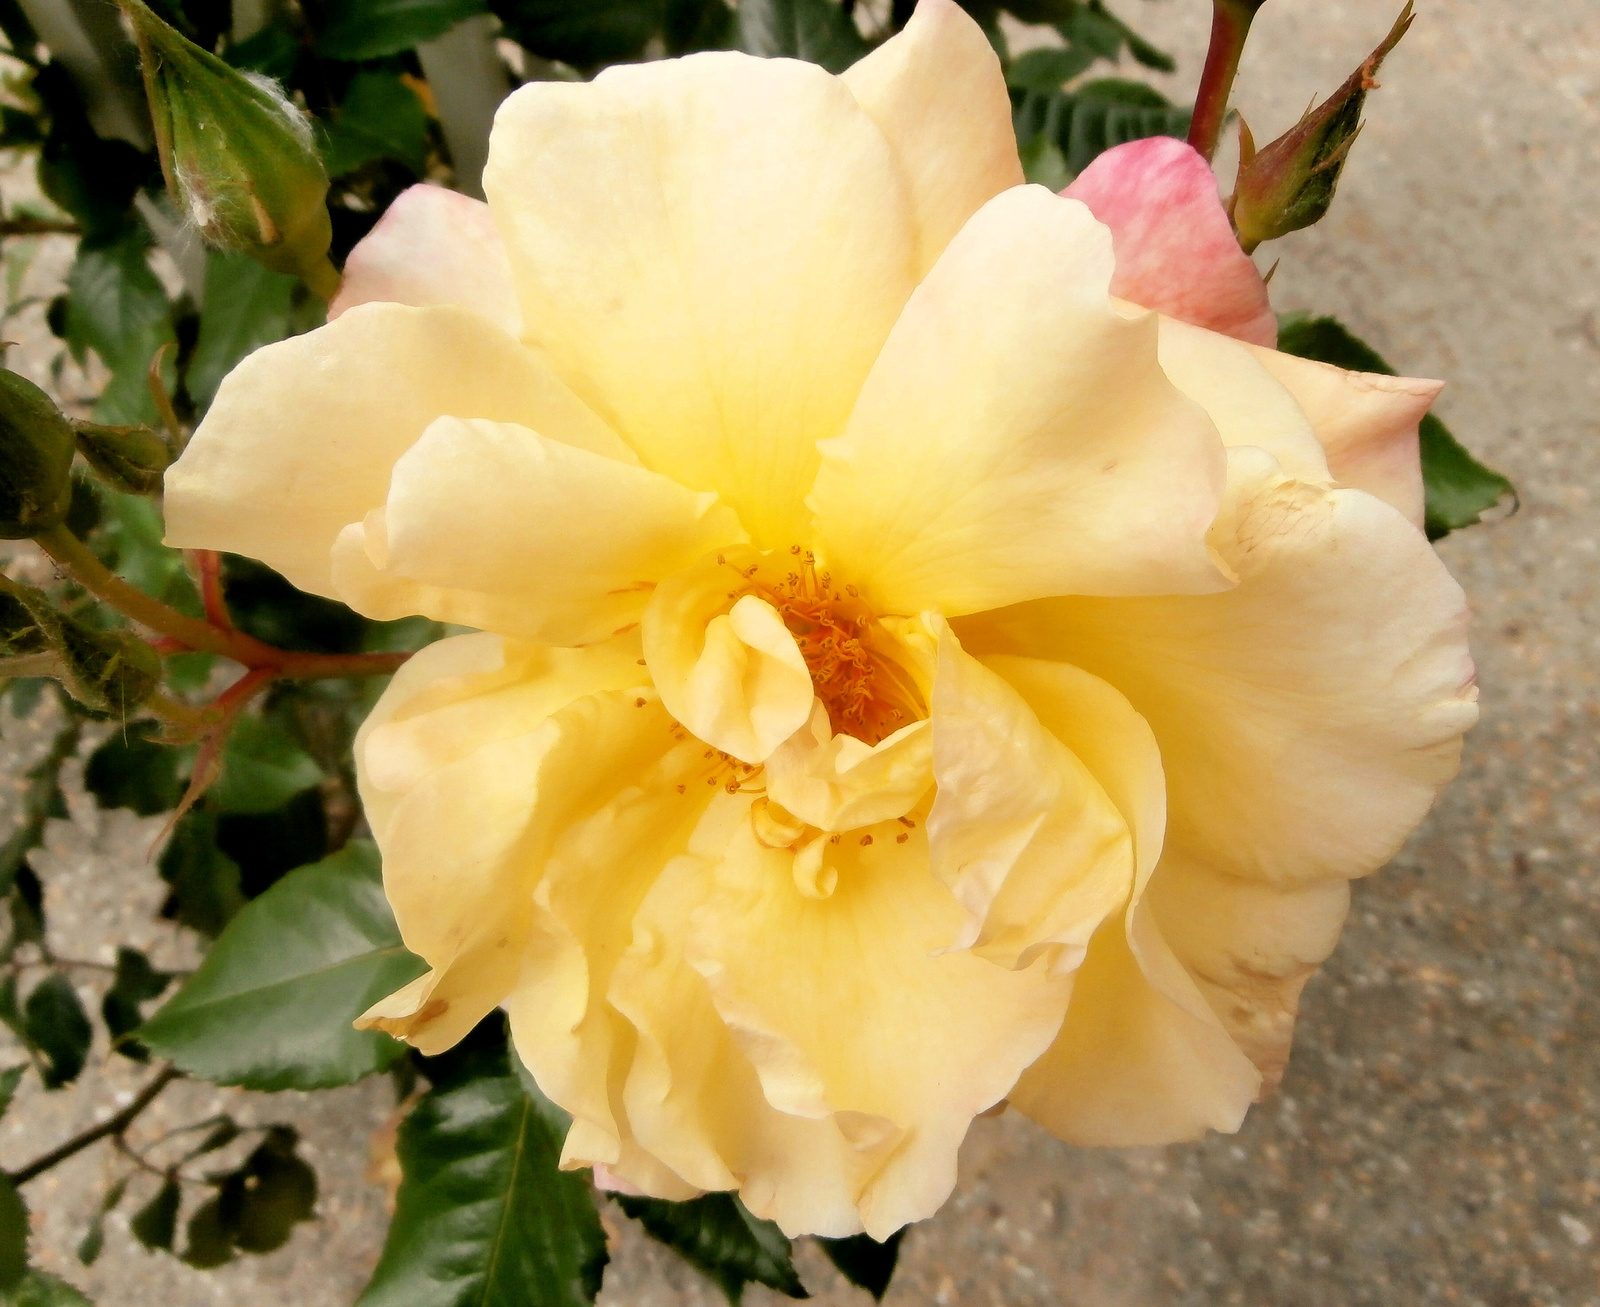 rózsa 1